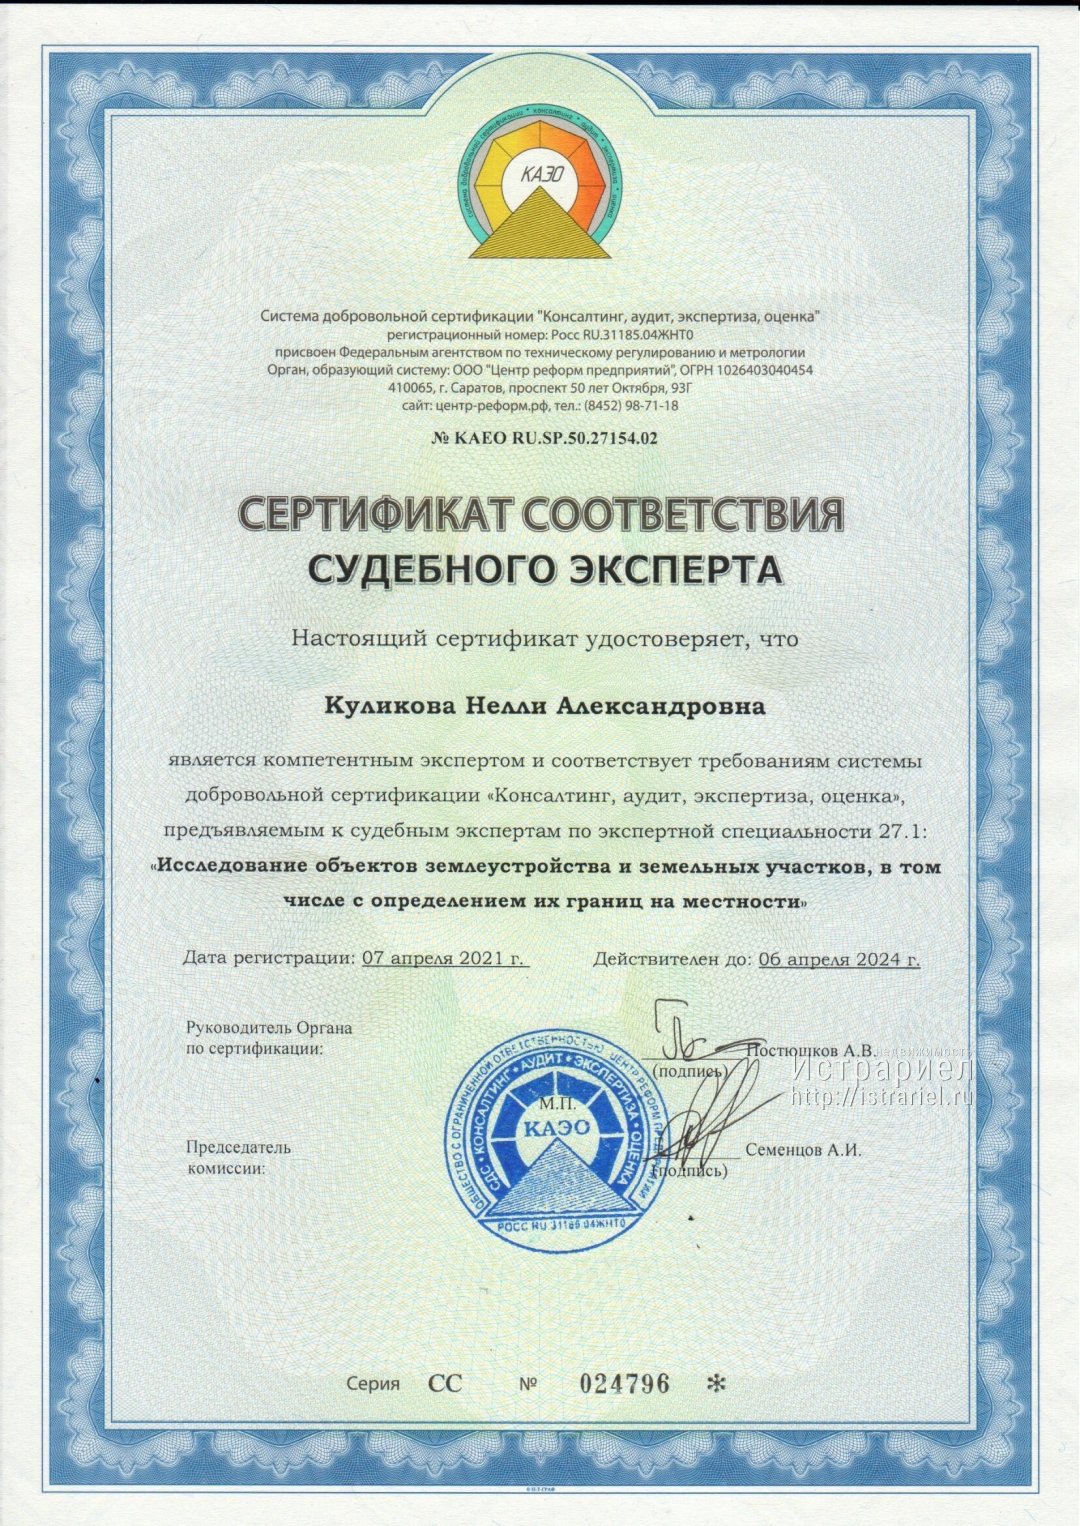 Сертификат судебного эксперта по специальности исследование объектов землеустройства